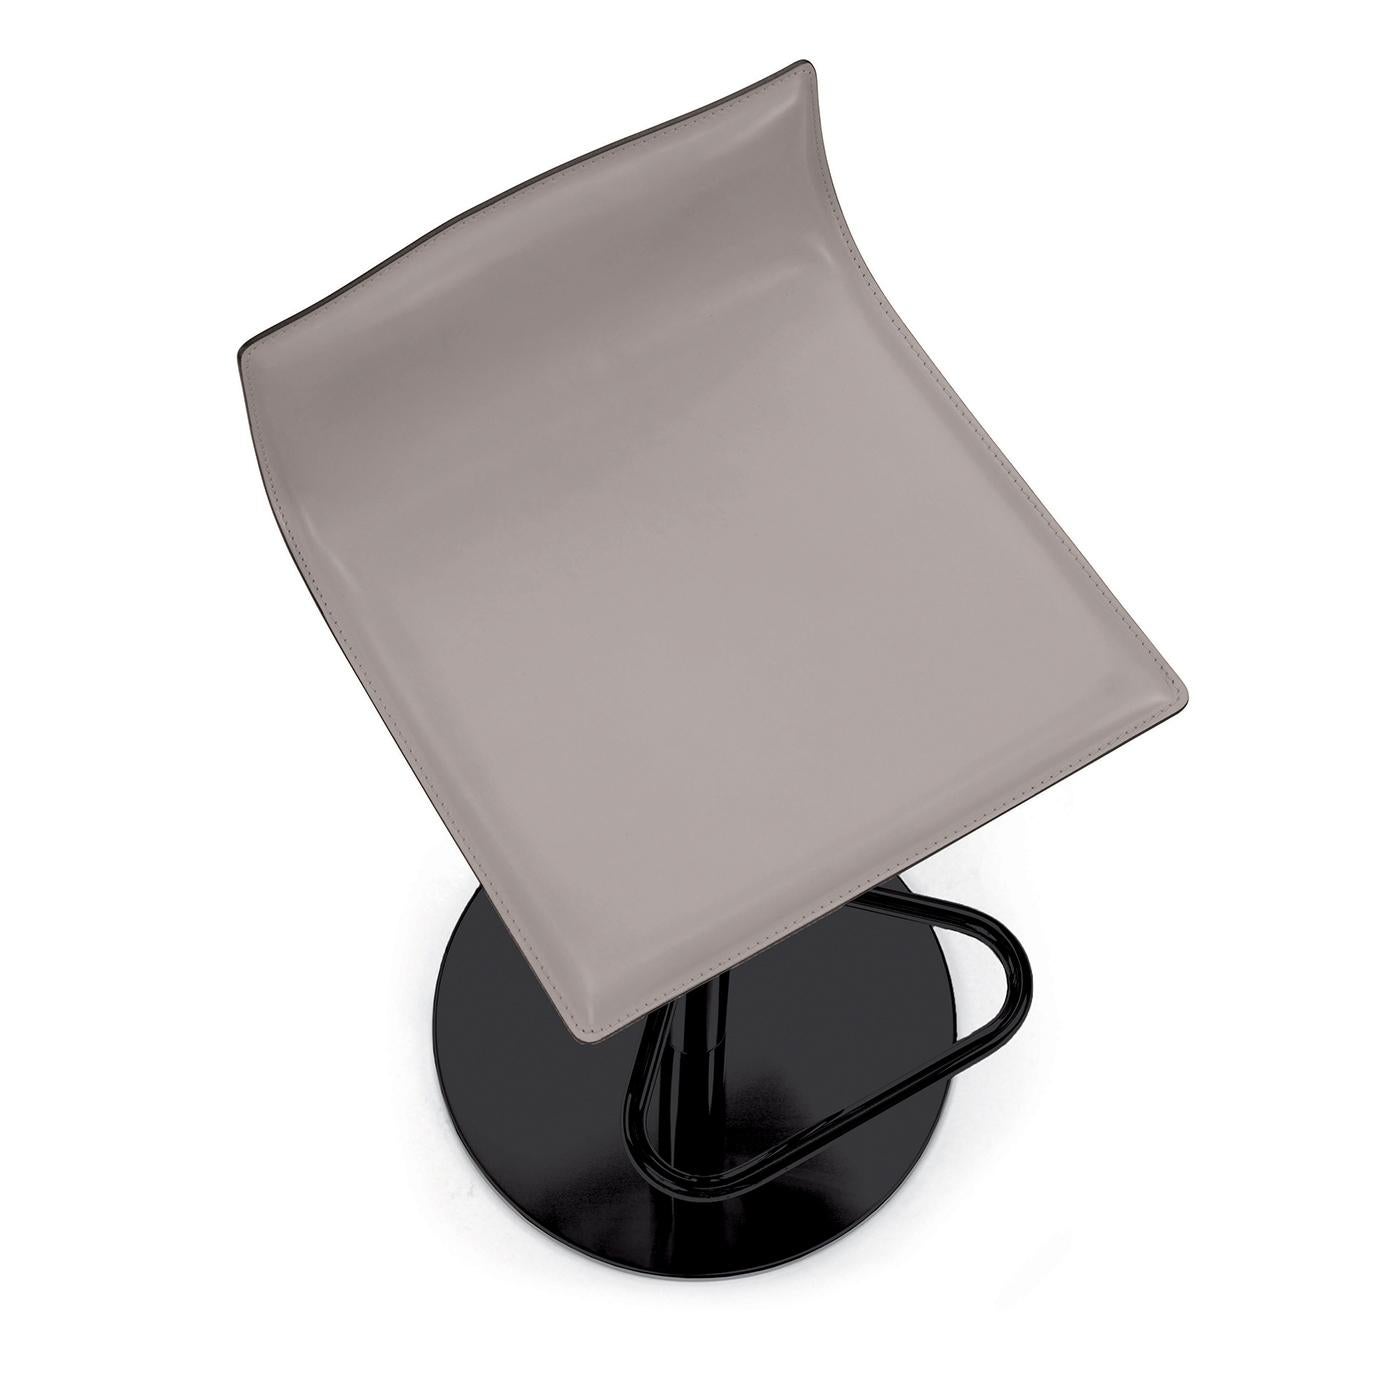 Micad ist in zahlreichen Ausführungen erhältlich, von Stühlen und Drehstühlen bis hin zu Hockern, die sich sowohl für das Büro als auch für den Wohnbereich eignen. Der Drehhocker hat eine Schale aus Buchensperrholz, die mit hartem oder weichem Leder